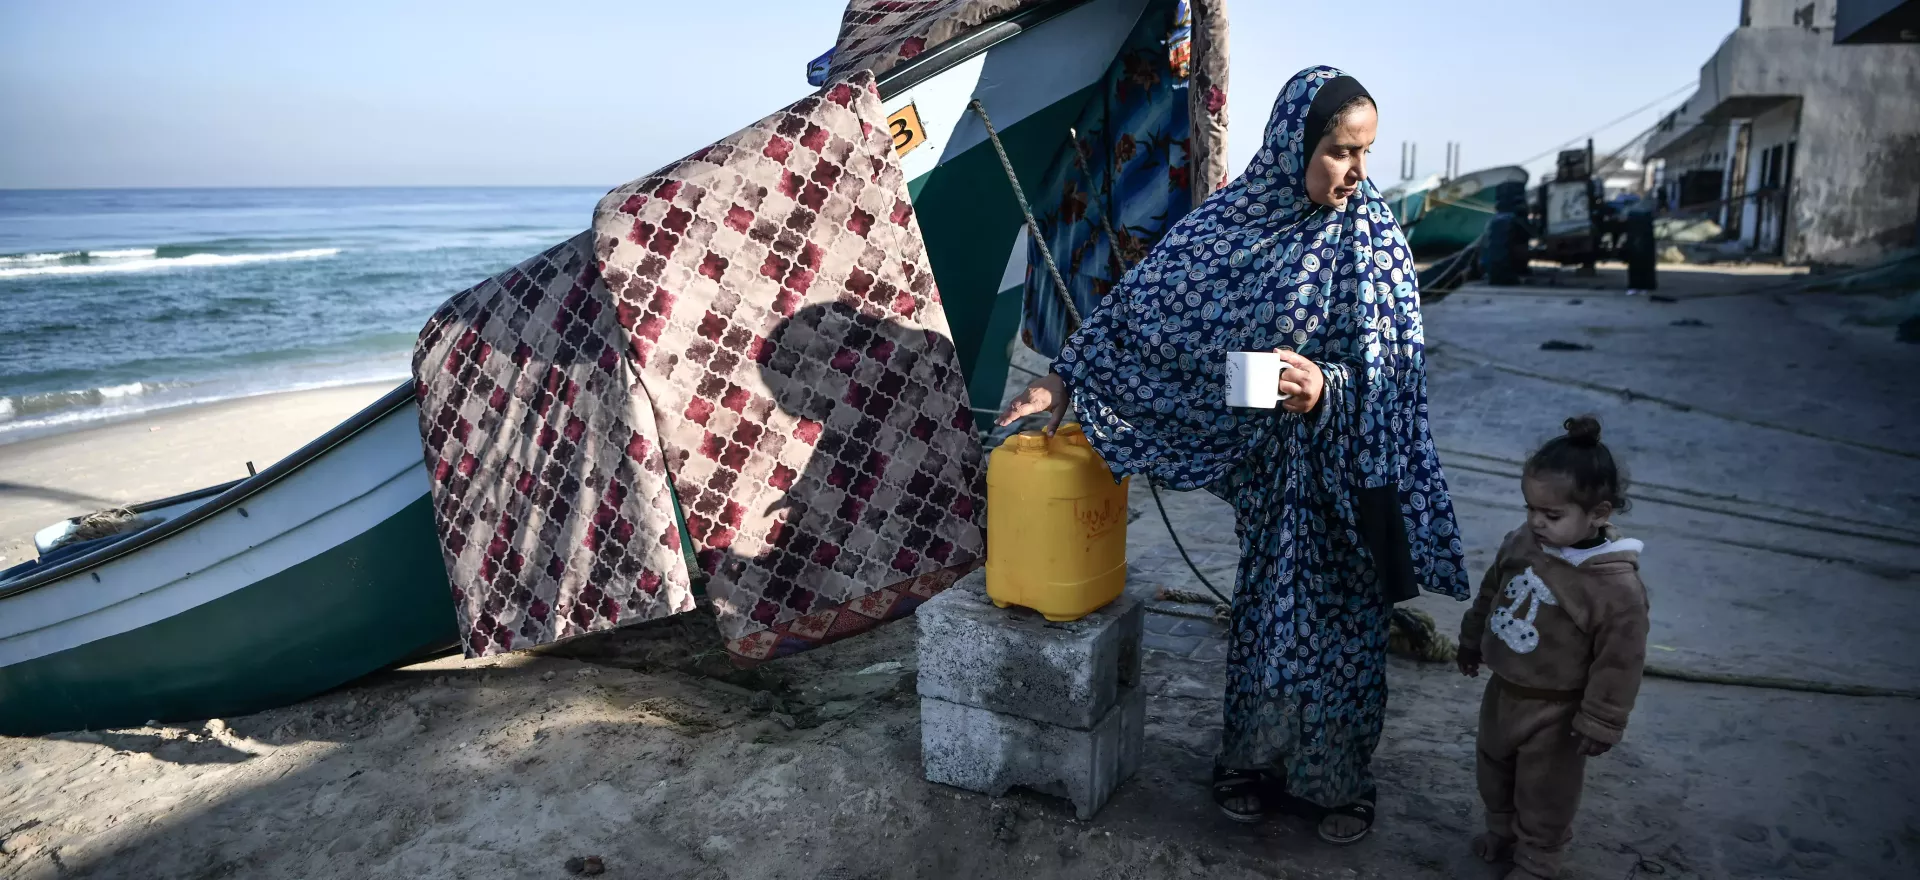 Une mère et sa petite fille se reposent et boivent de l'eau à côté d'un bateau de pêche sur la plage.